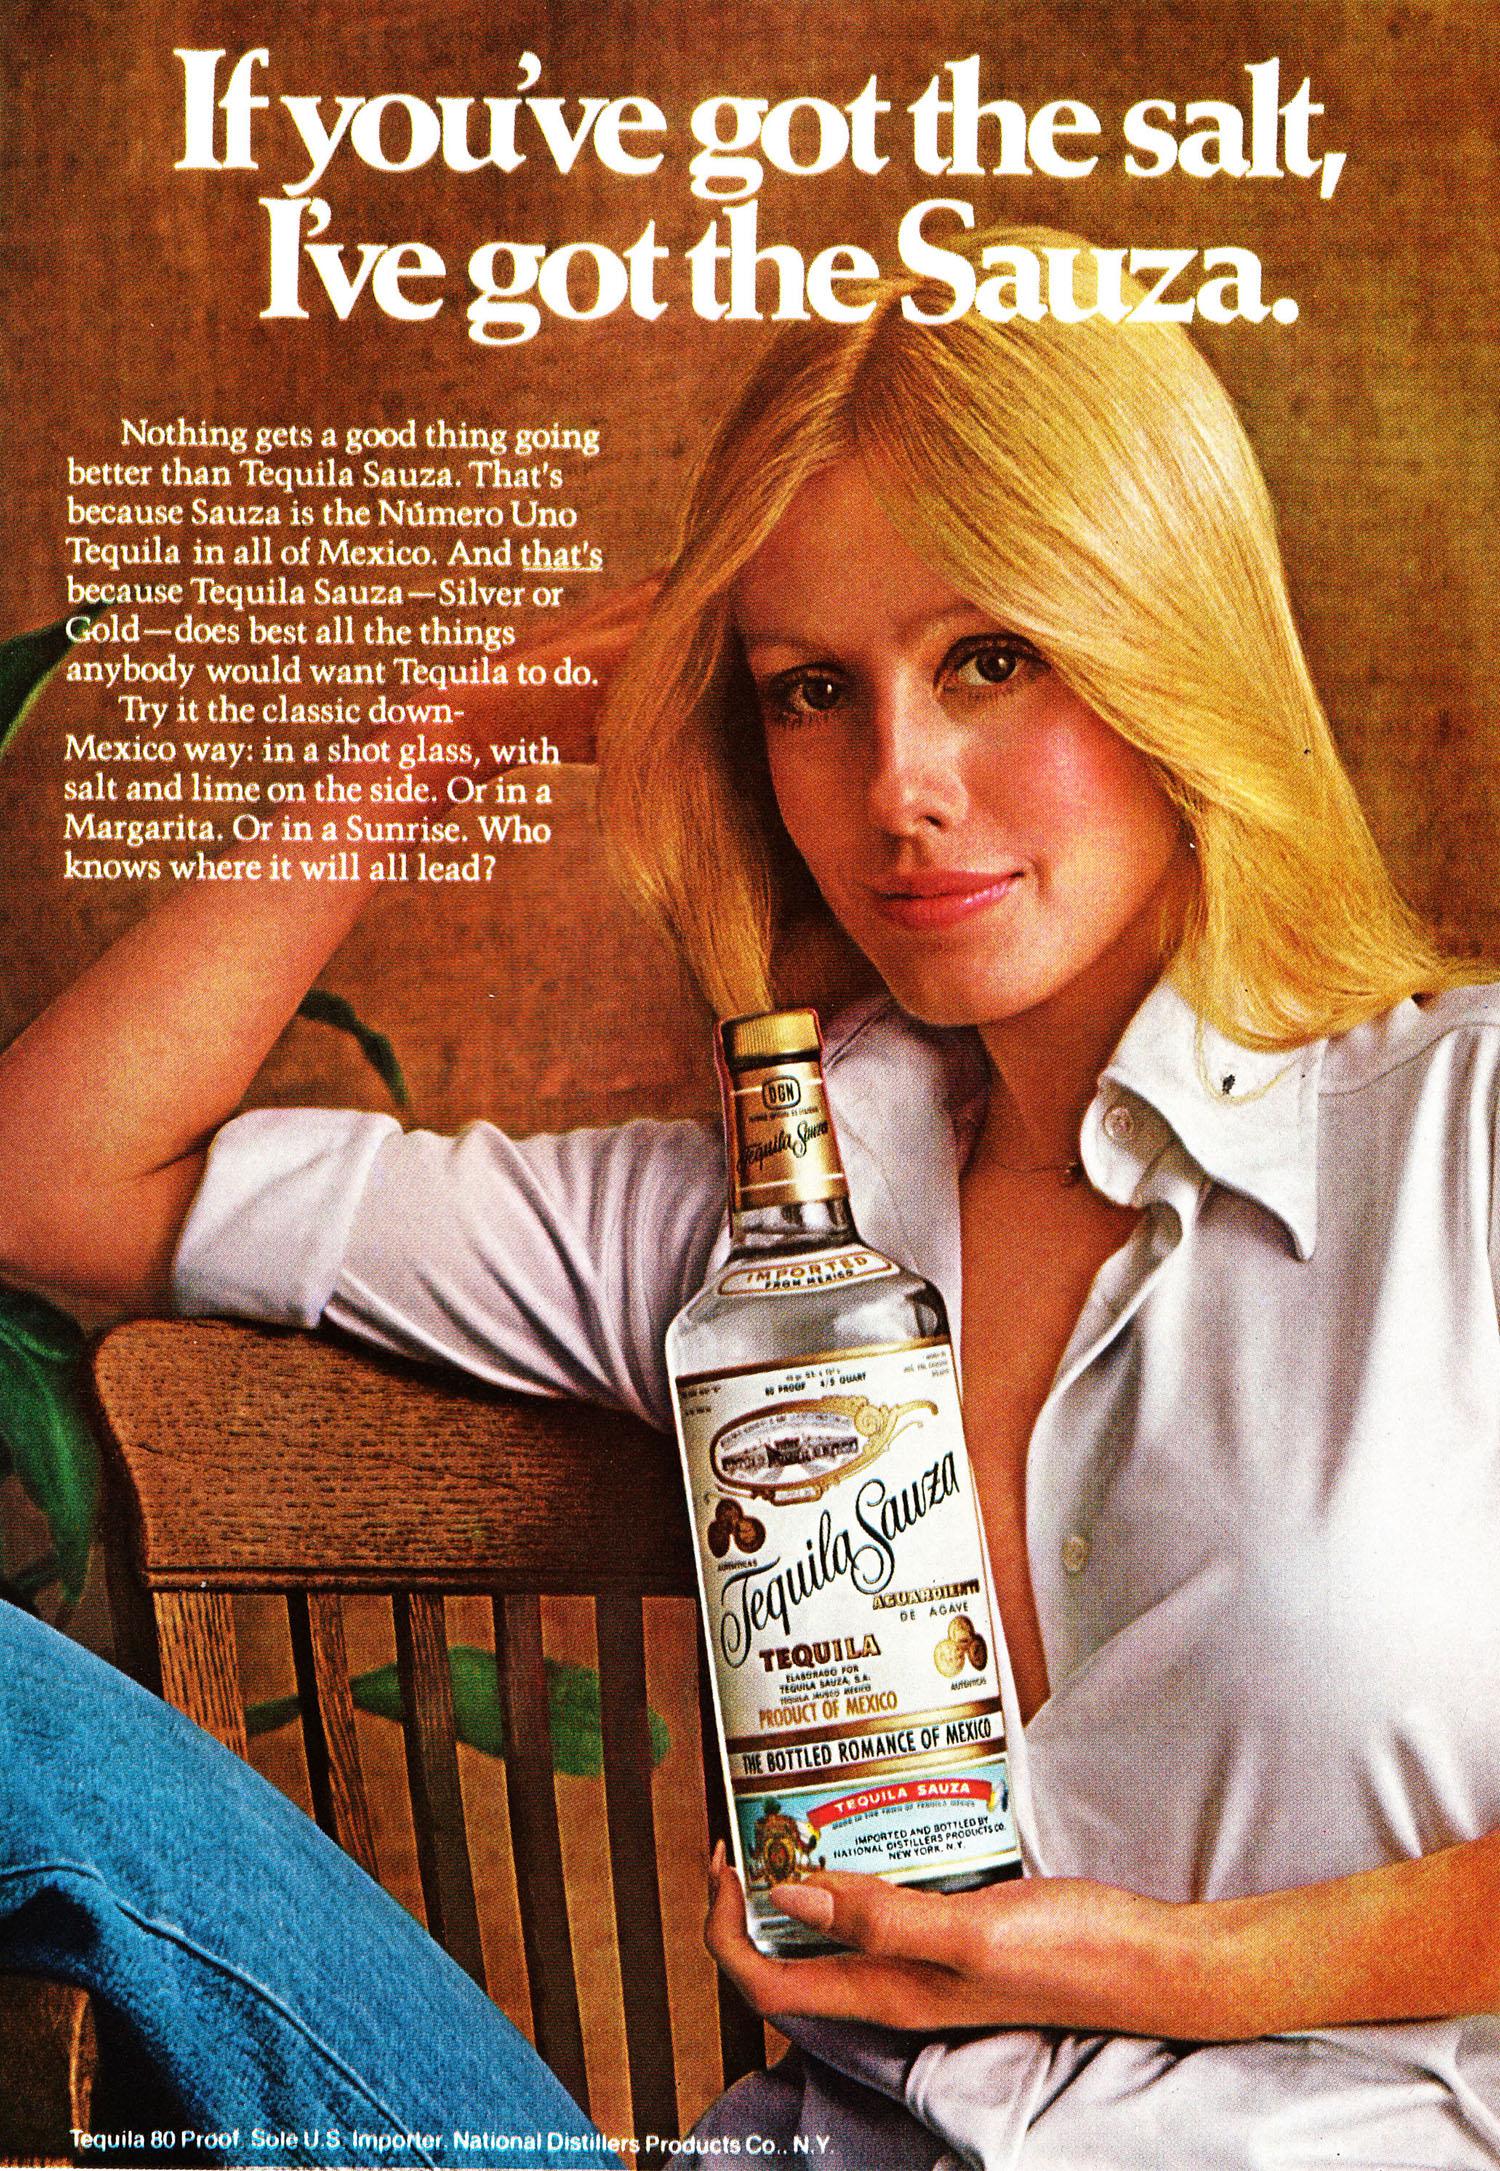 Les femmes Vendant des boissons alcoolisées: Les Dames du Vintage à la Publicité pour l'Alcool